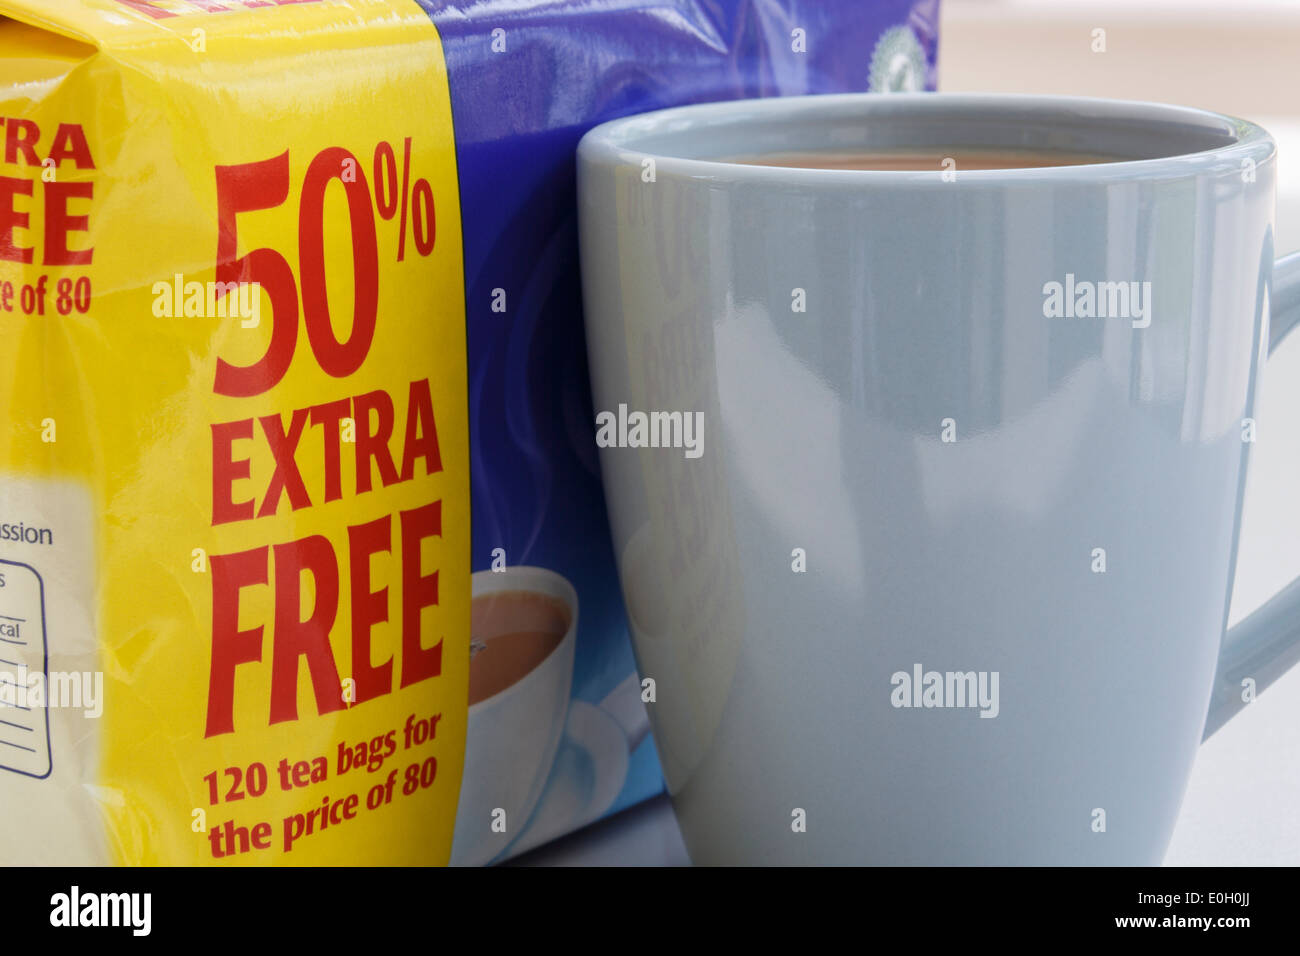 Un buon valore di pacchetti scontati di Tetley's teabags con etichetta gialla indicante il 50% extra libero accanto a una tazza di tè. Inghilterra, Regno Unito, Gran Bretagna Foto Stock